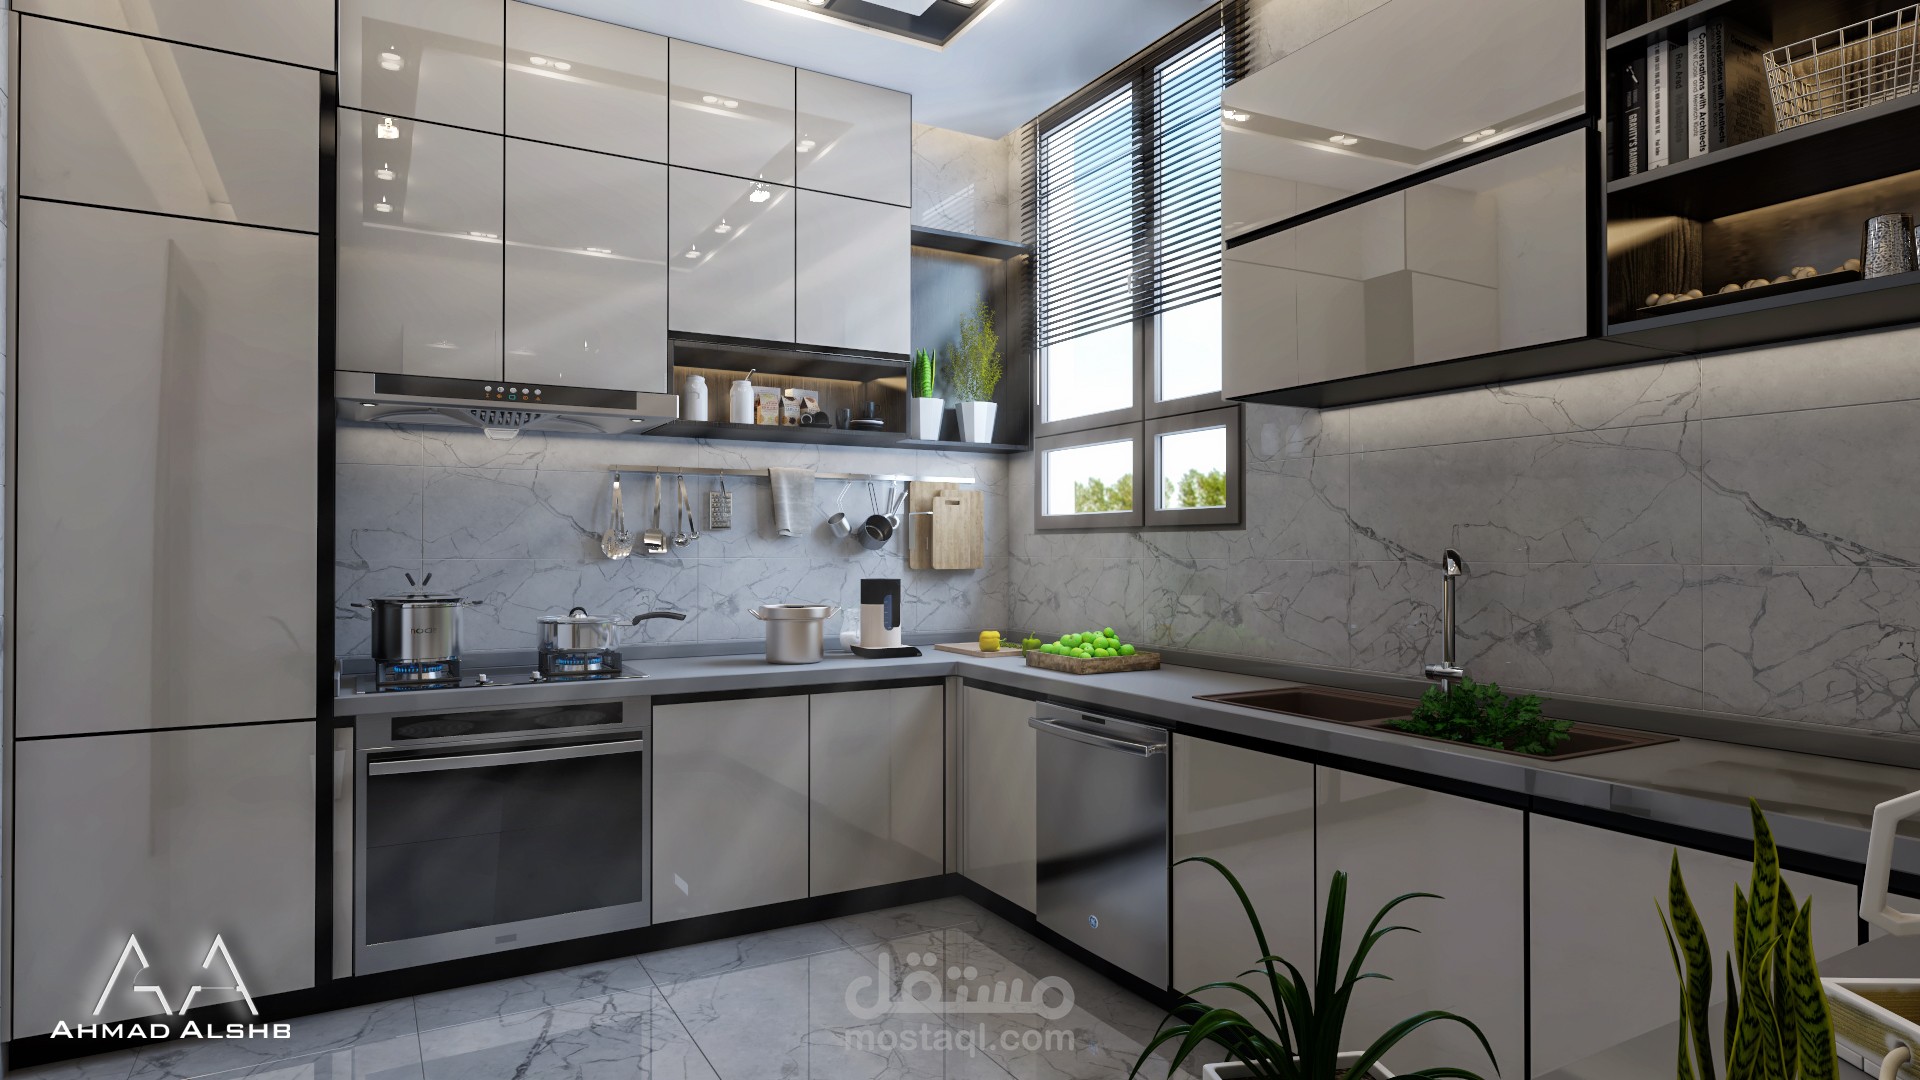 Pin by ahmad on افكار مطبخ  Modern kitchen design, Kitchen trends,  Interior design kitchen